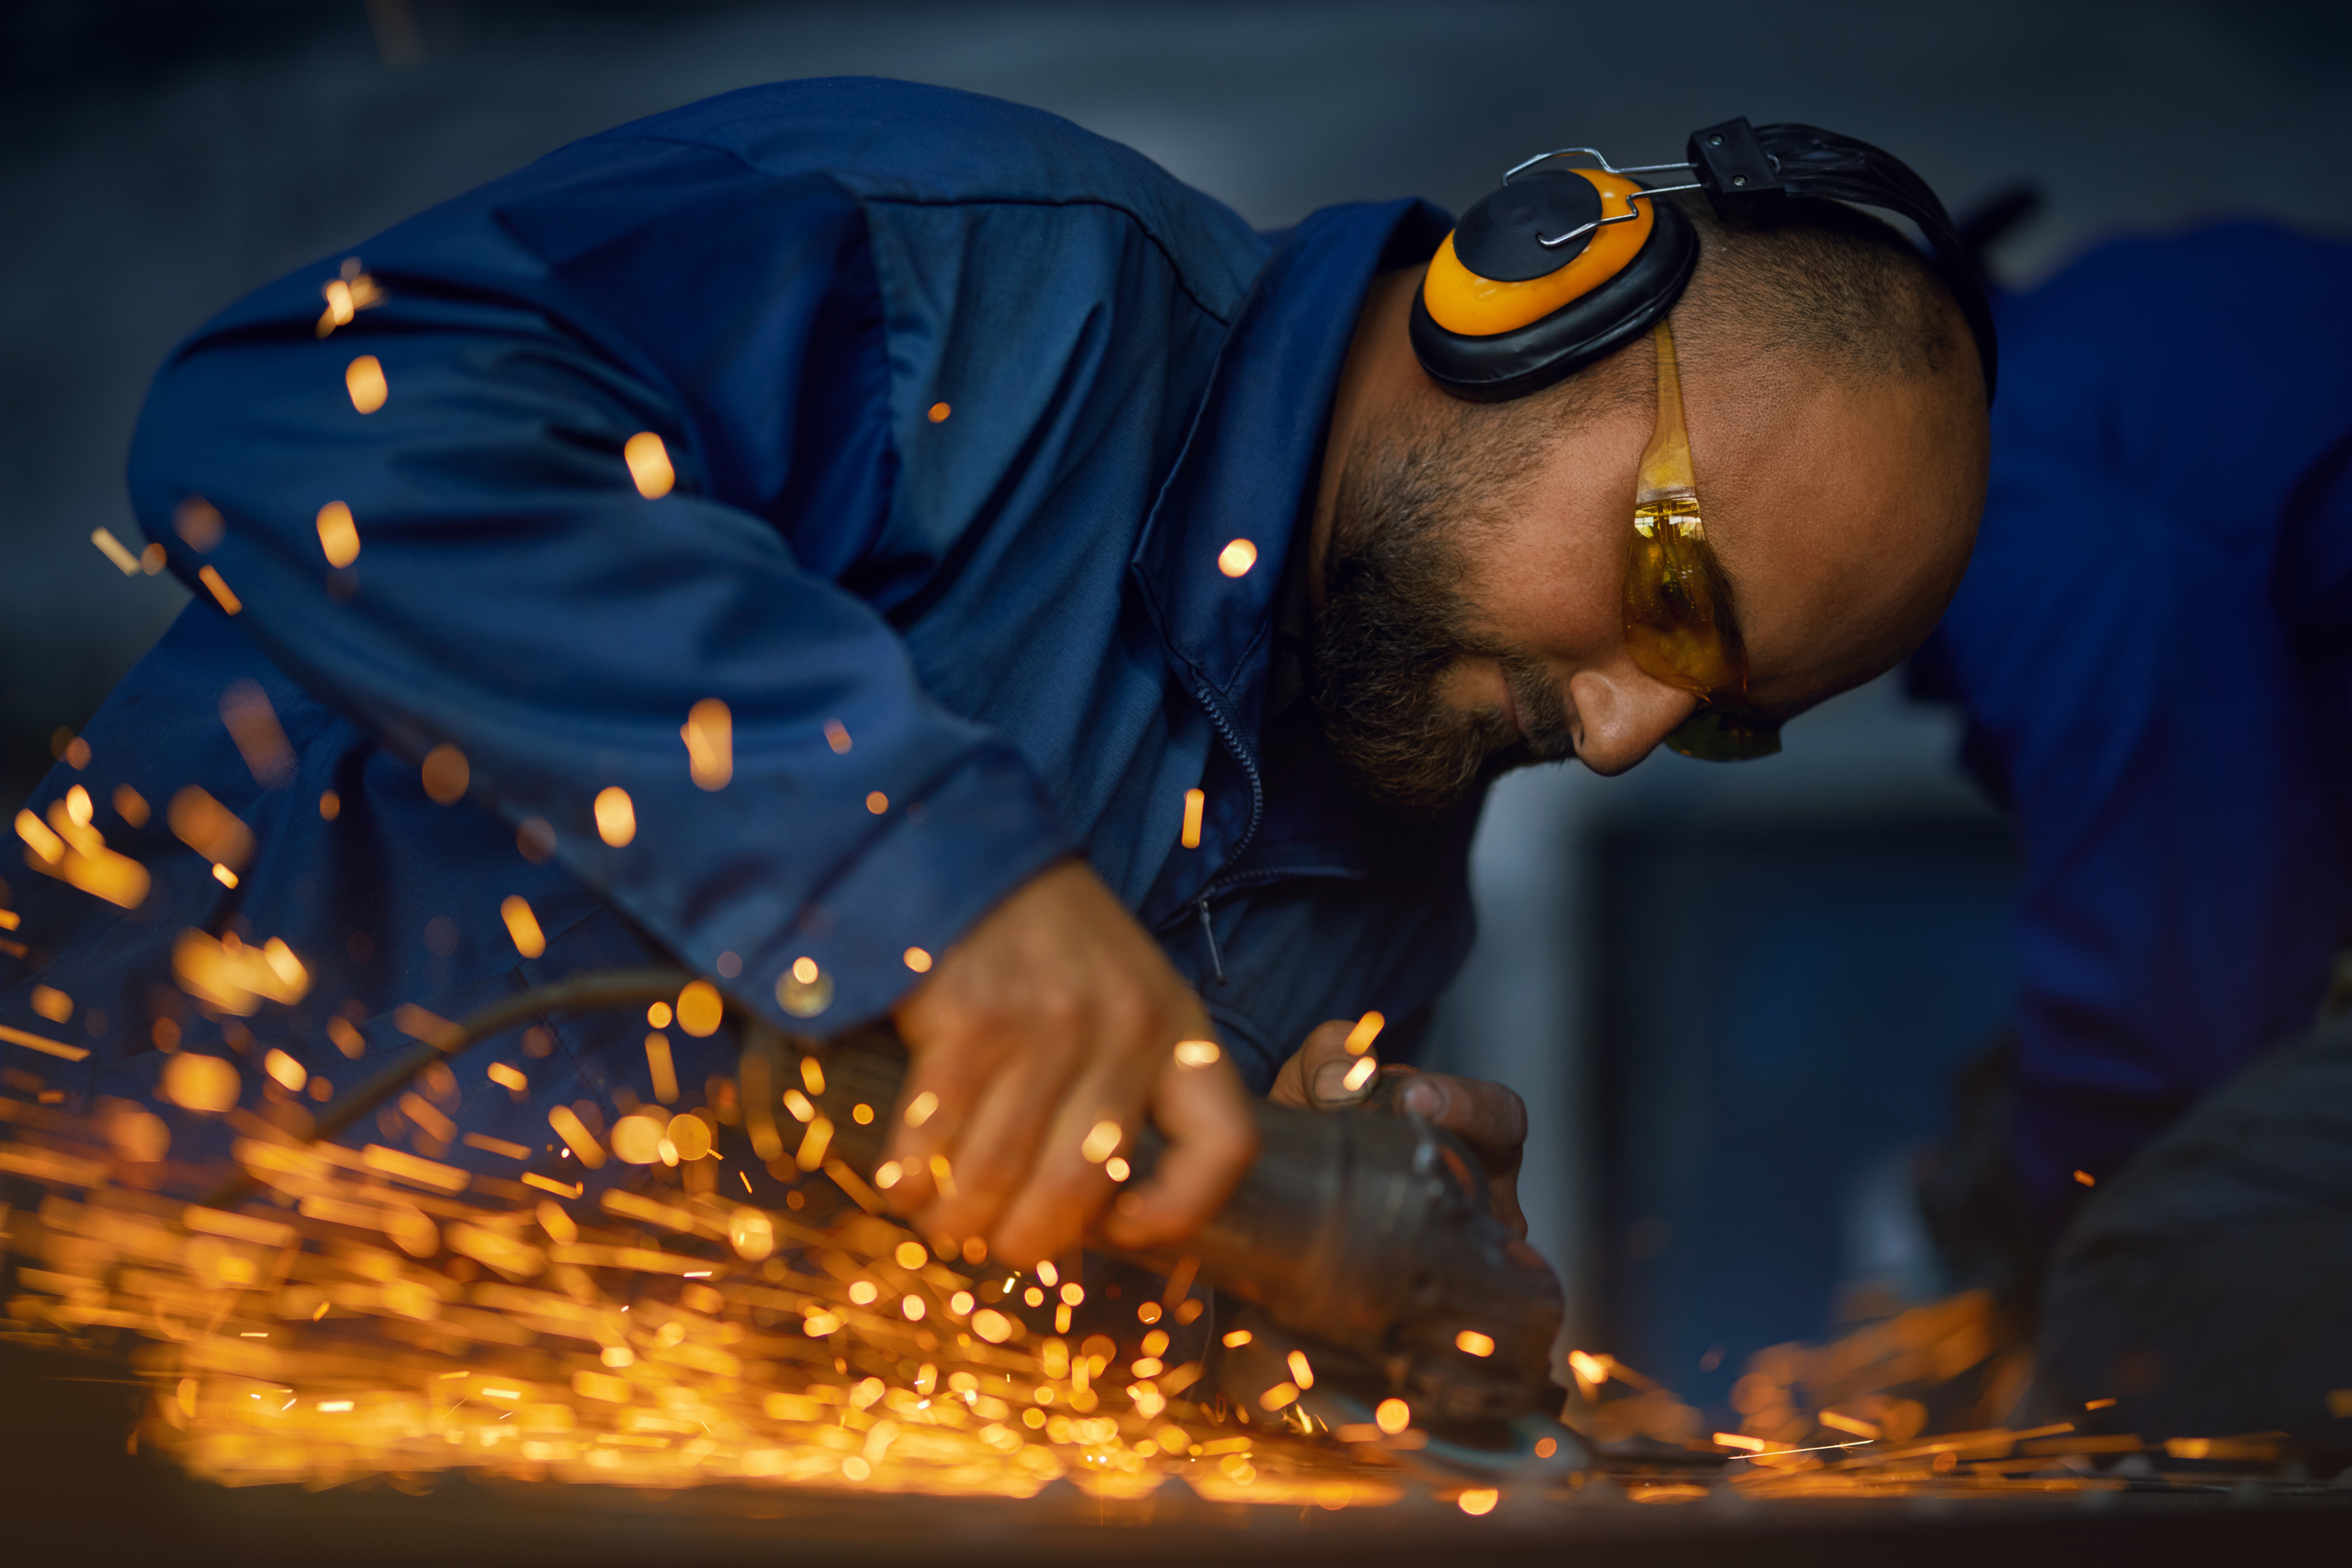 Guy wearing welding glasses - gas welding equipment